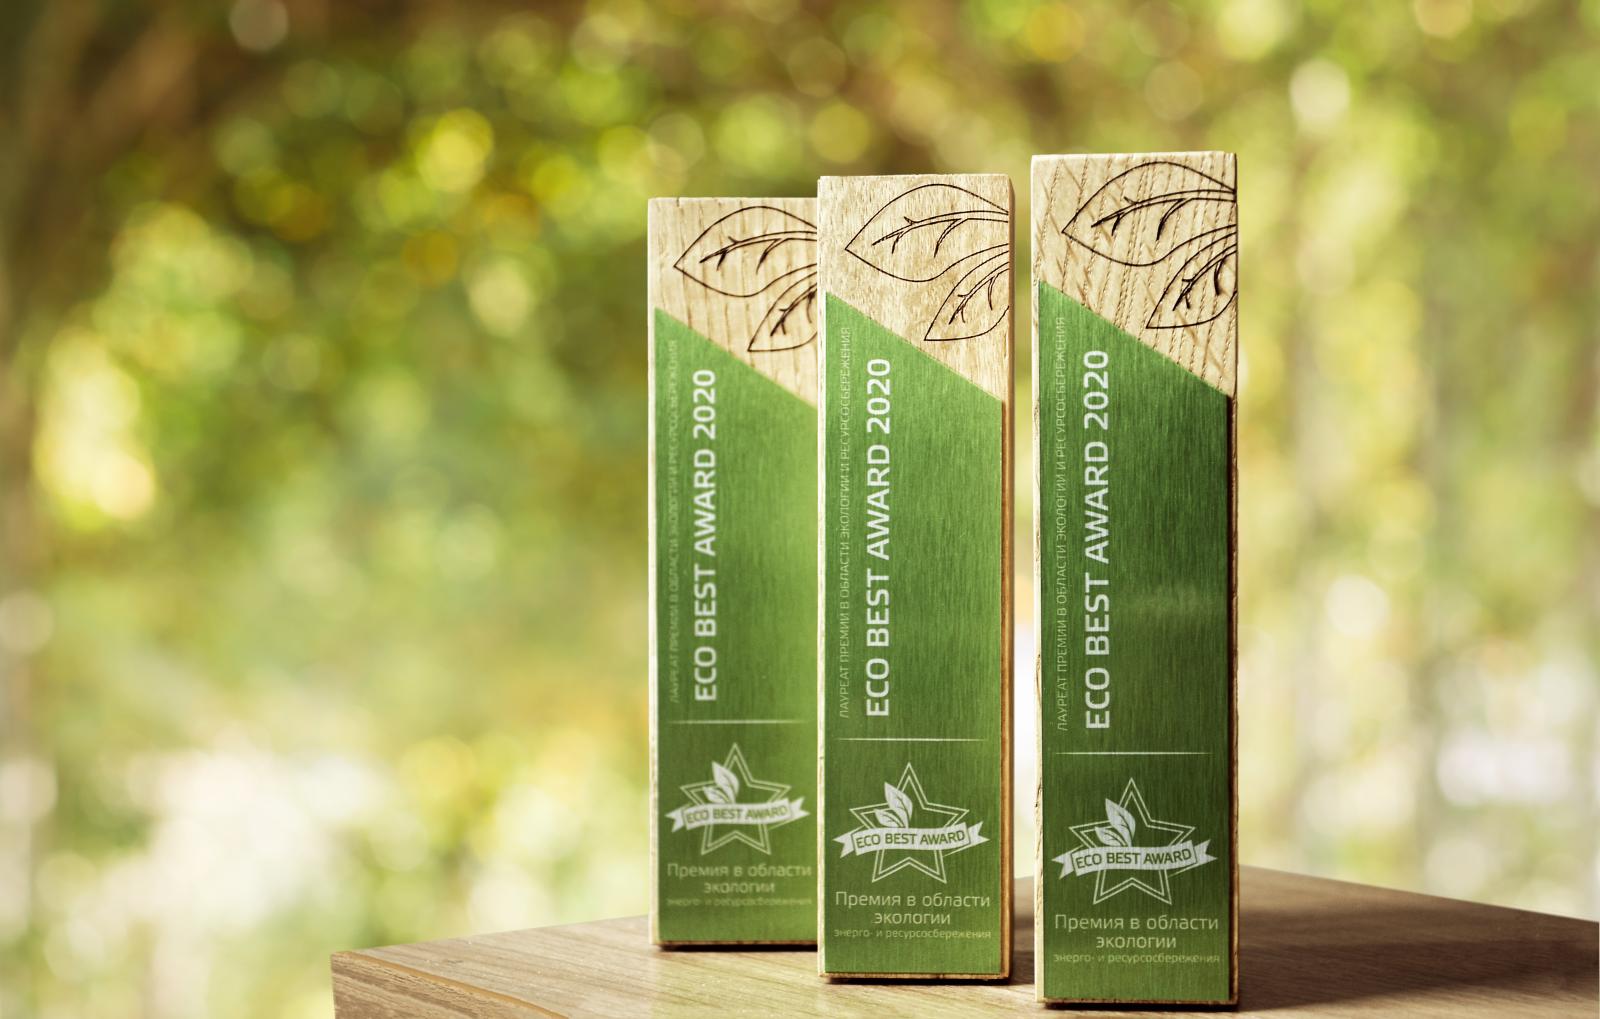 Экологичный бизнес: подведены итоги премии Eco Best Awards-2020
